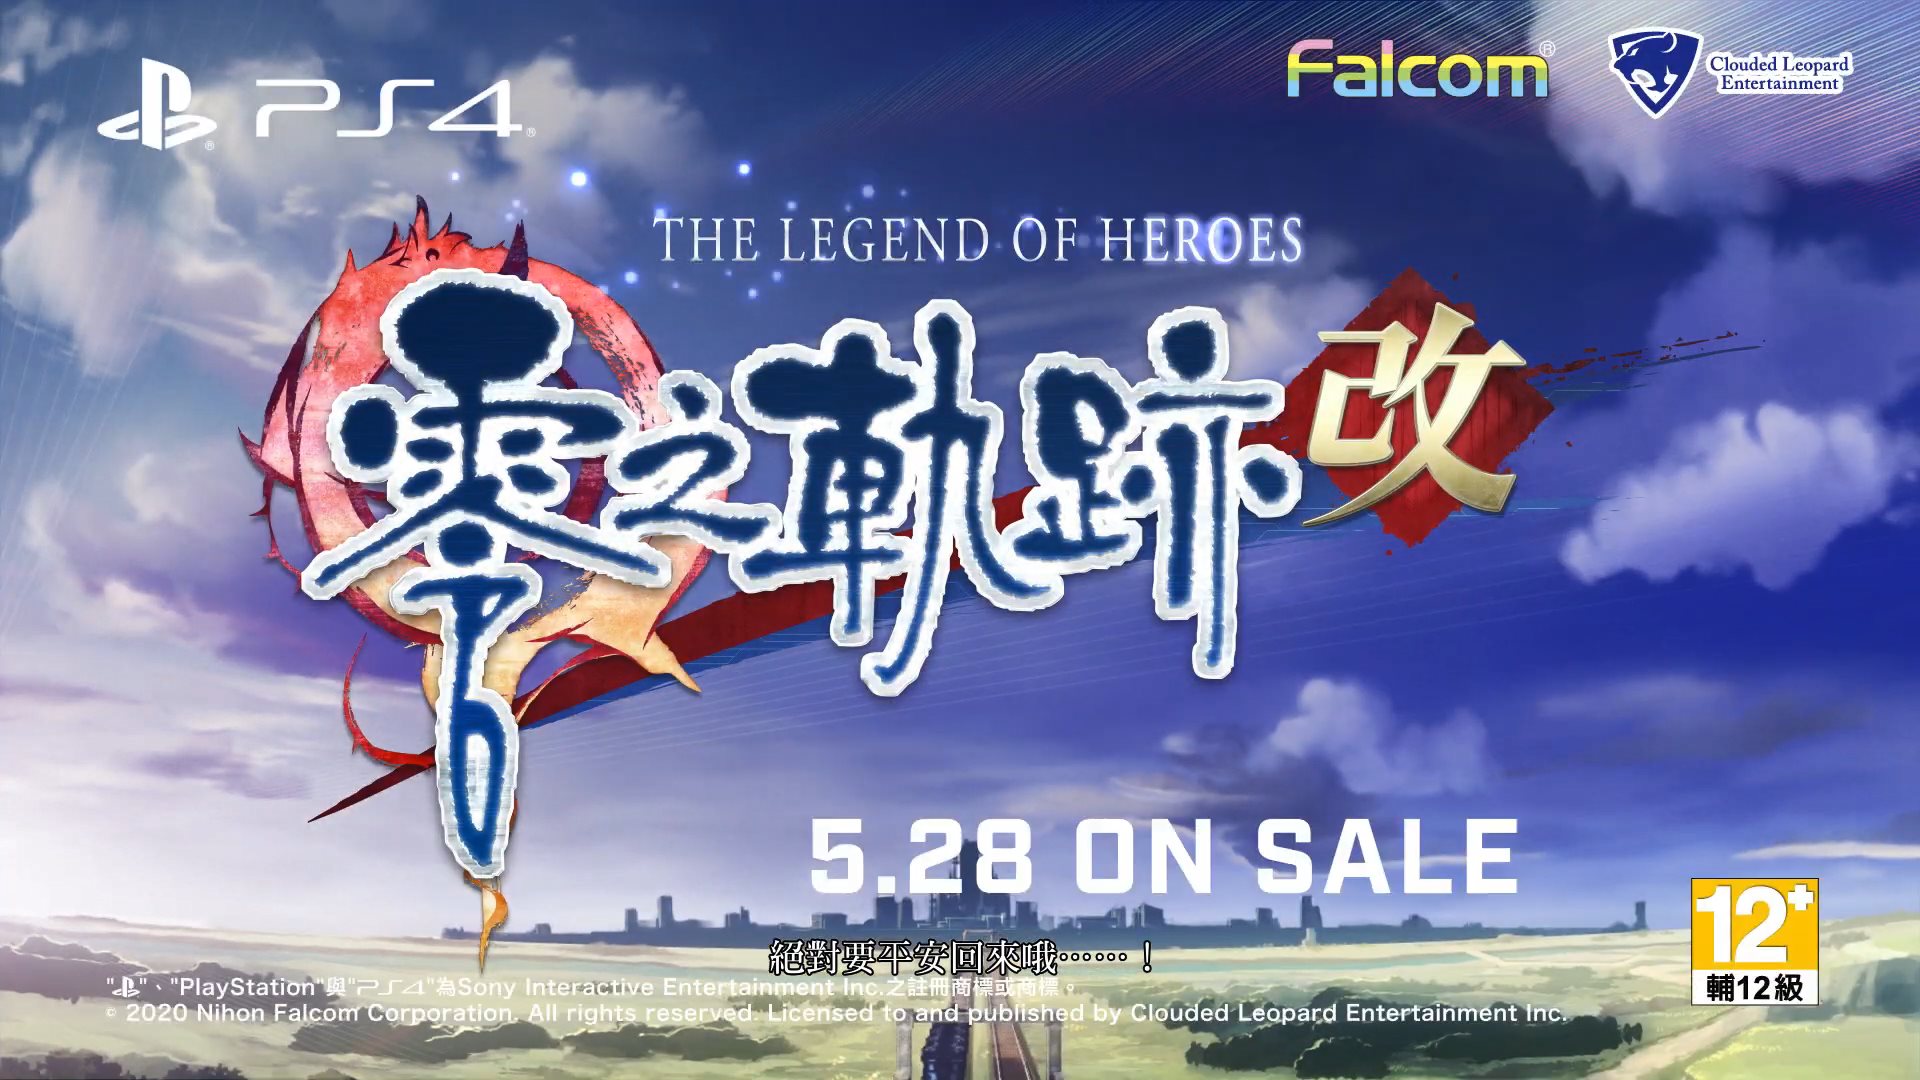 《英雄传说:零之轨迹 改》中文版预告 5月28日发售